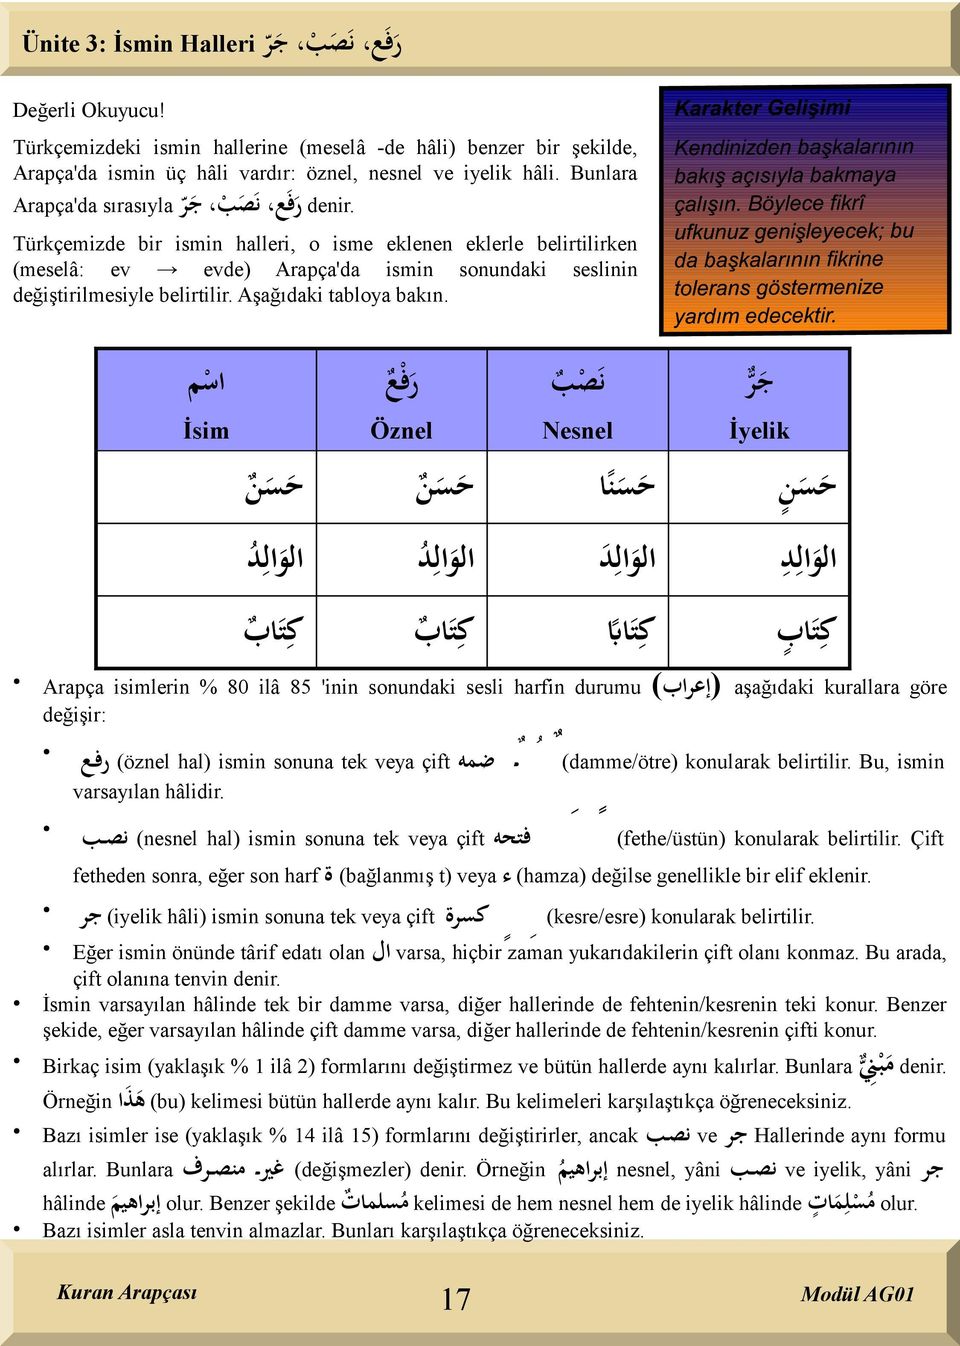 Türkçemizde bir ismin halleri, o isme eklenen eklerle belirtilirken (meselâ: ev evde) Arapça'da ismin sonundaki seslinin değiştirilmesiyle belirtilir. Aşağıdaki tabloya bakın.